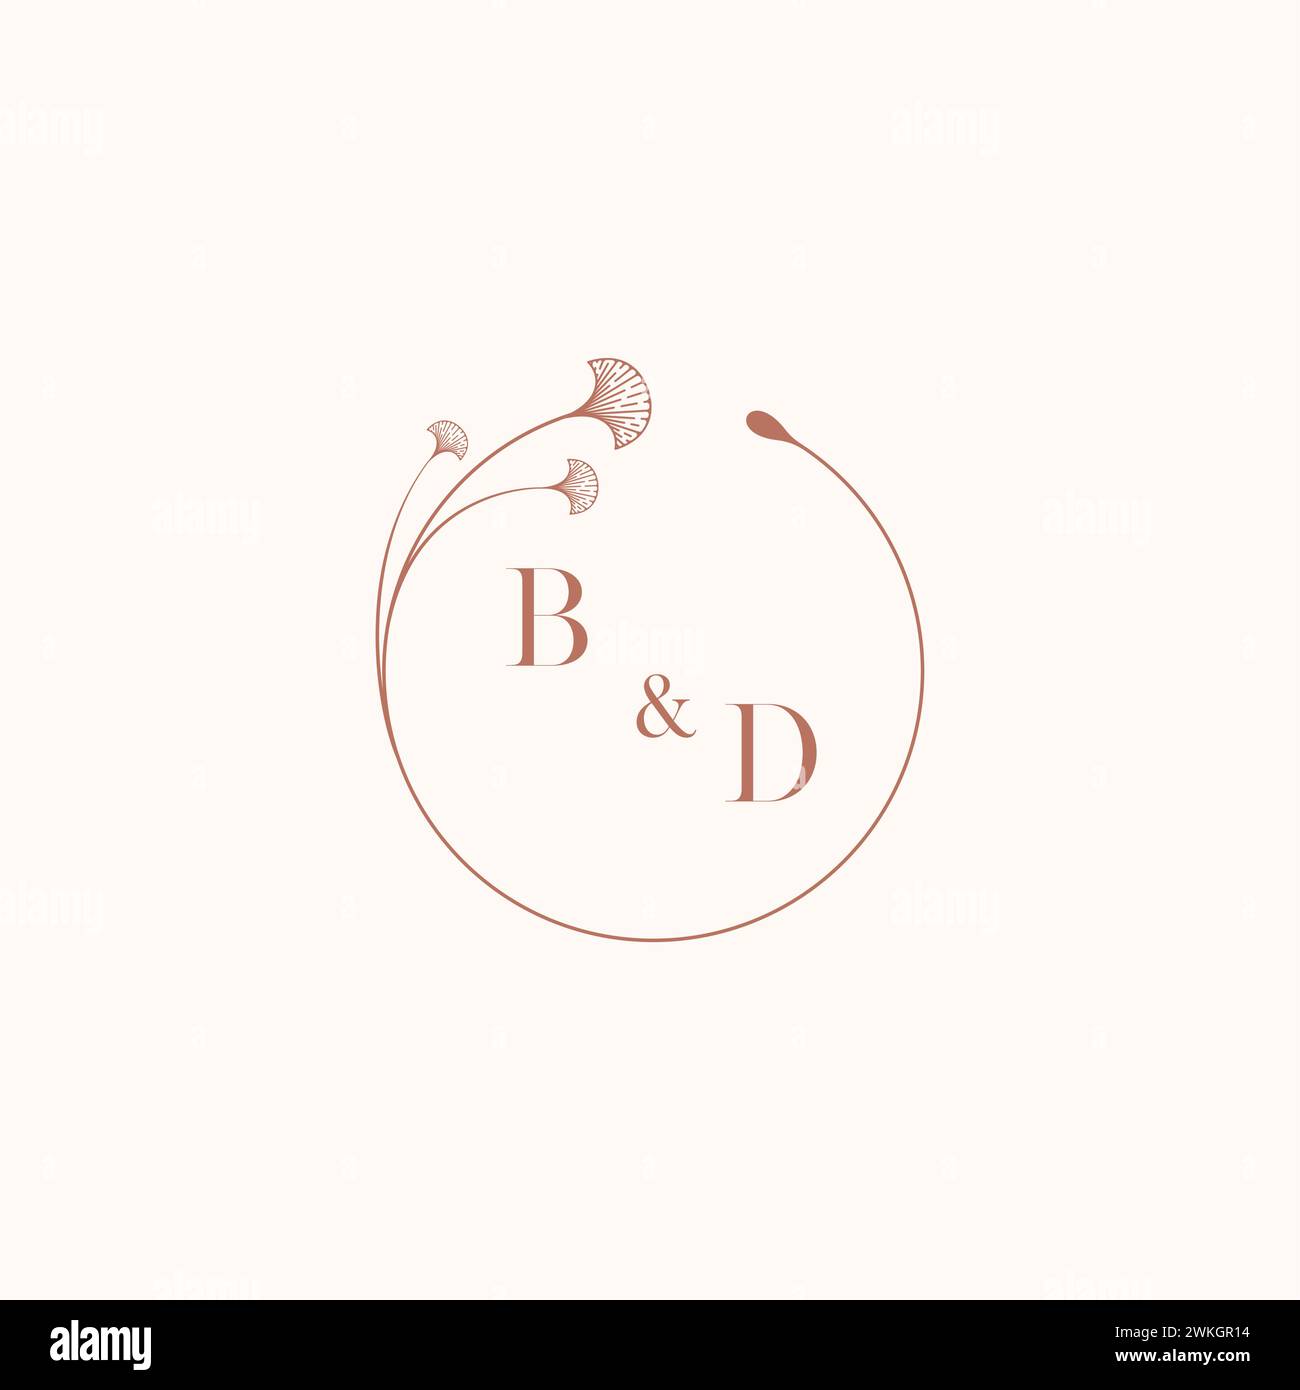 BD wedding monogram logo designideas as inspiration Stock Vector